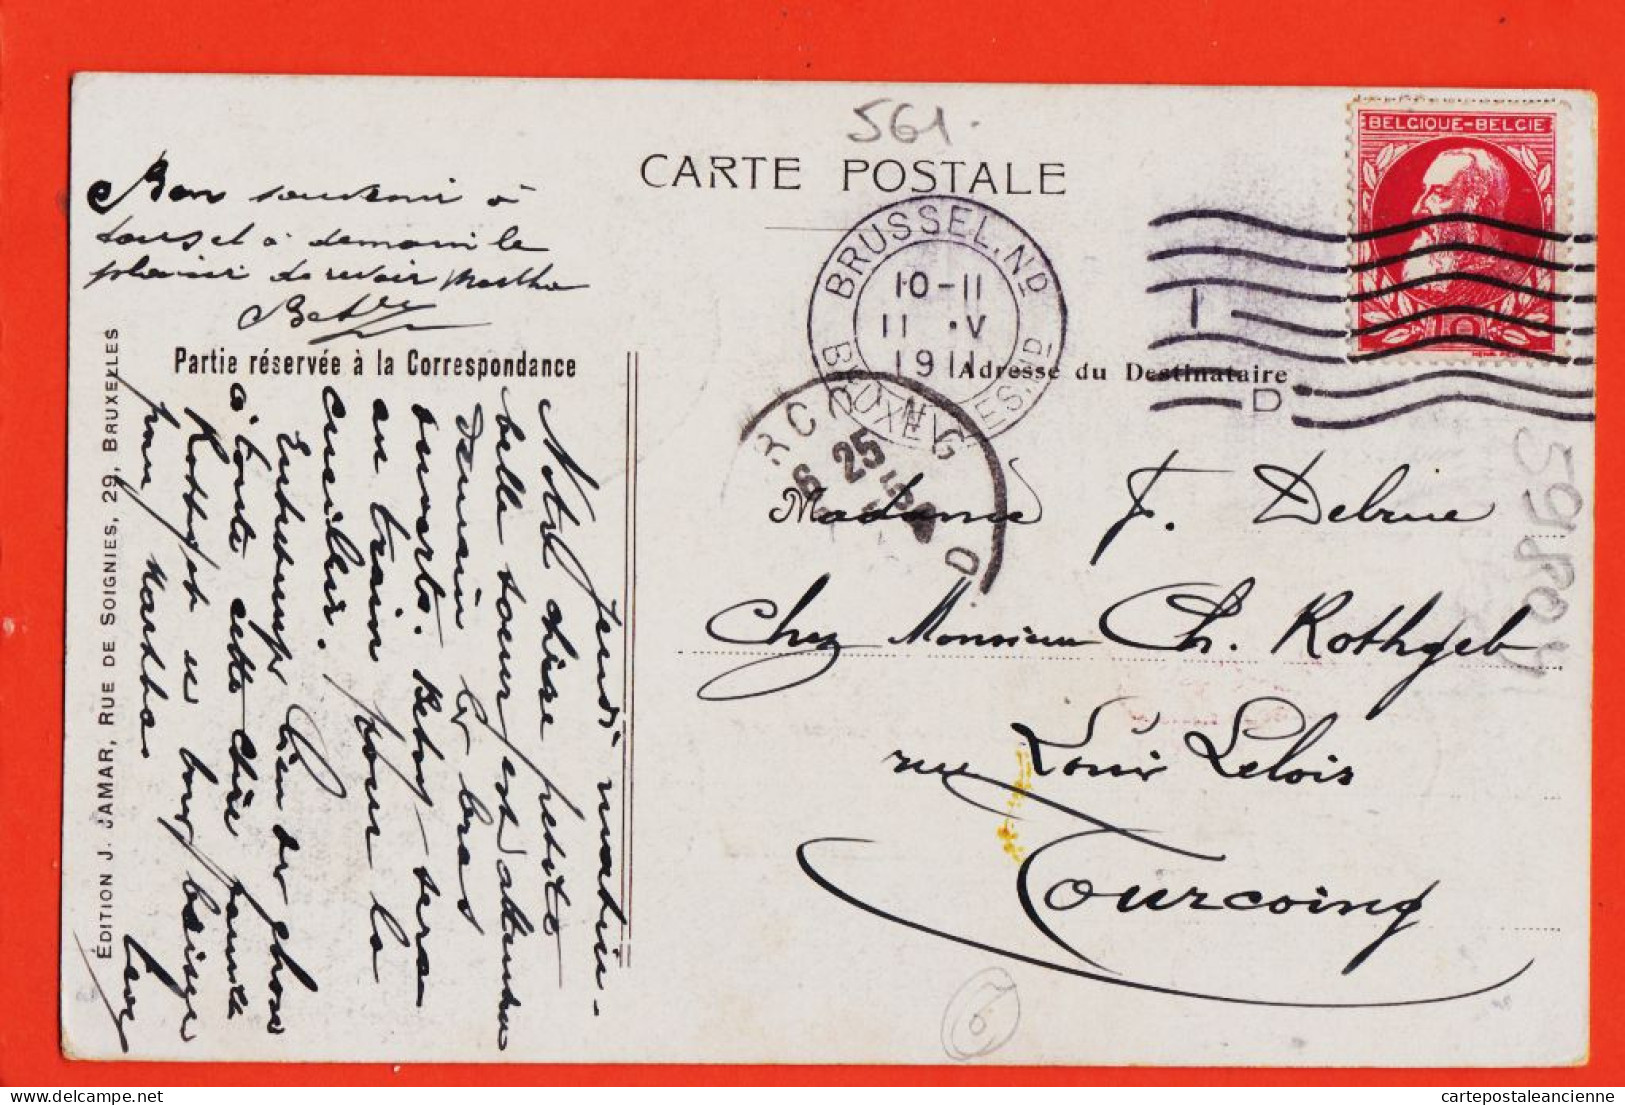 39480 / ⭐ BRUXELLES Souvenir Visite Président République Française 1911  Edition JAMAR - Fiestas, Celebraciones